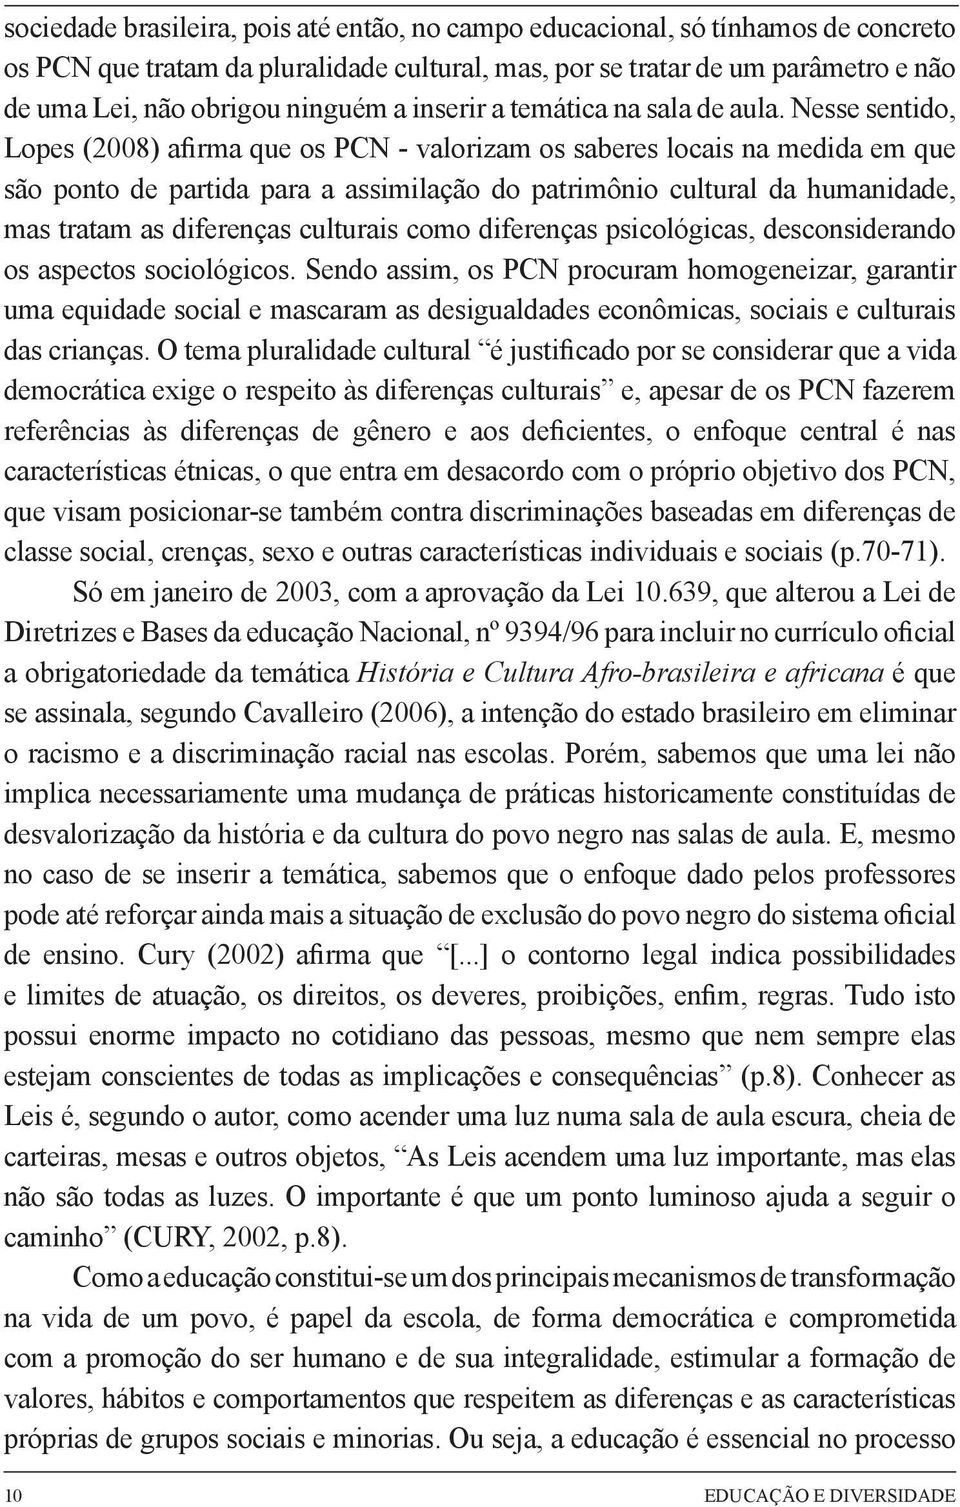 Nesse sentido, Lopes (2008) afirma que os PCN - valorizam os saberes locais na medida em que são ponto de partida para a assimilação do patrimônio cultural da humanidade, mas tratam as diferenças